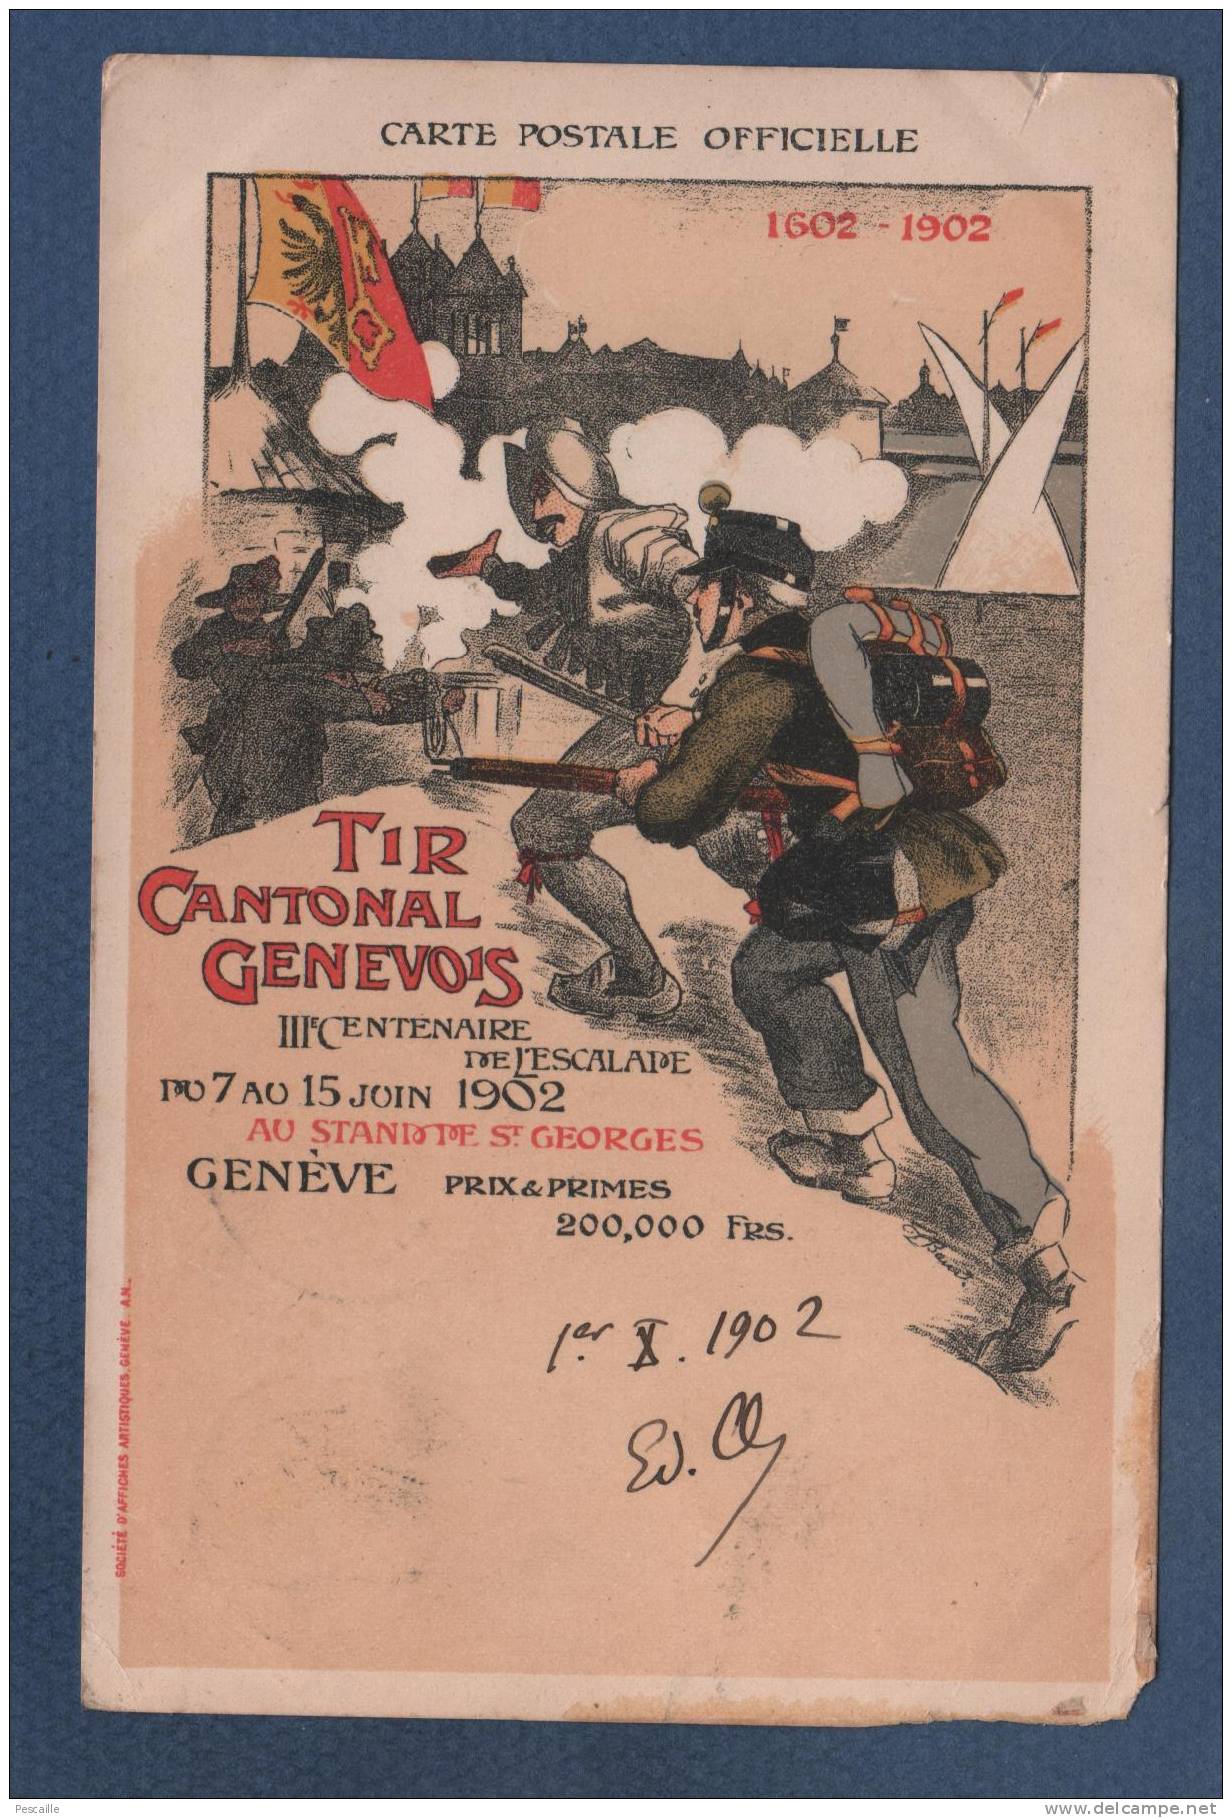 CARTE POSTALE OFFICIELLE TIR CANTONAL GENEVOIS 1602 - 1902 - CIRCULEE EN 1902 - SOCIETE D'AFFICHES ARTISTIQUES GENEVE AN - Genève